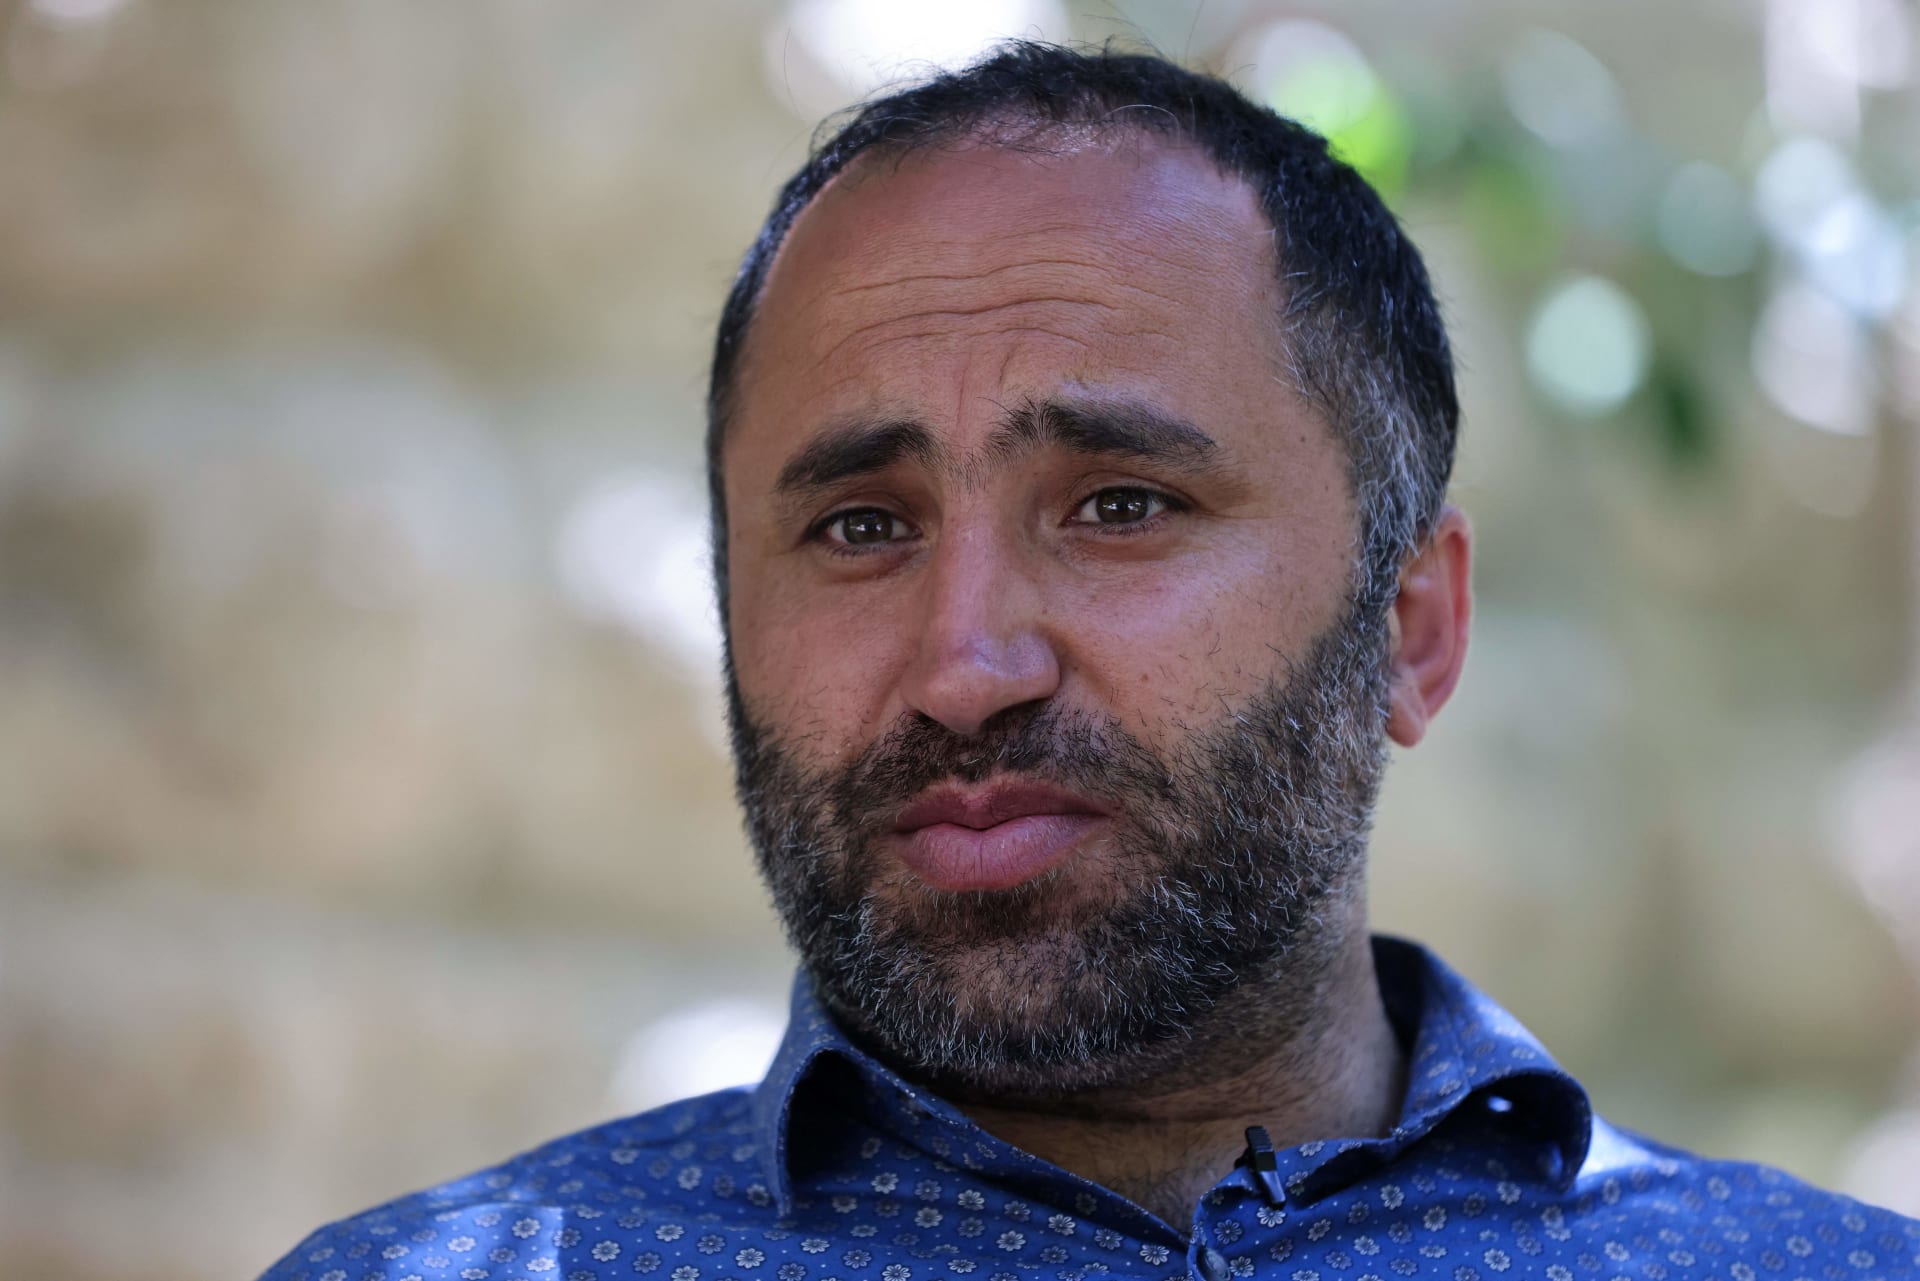 ناشط فلسطيني يؤكد لـCNN تعرضه للضرب على يد جندي إسرائيلي في الخليل ويخشى على حياته